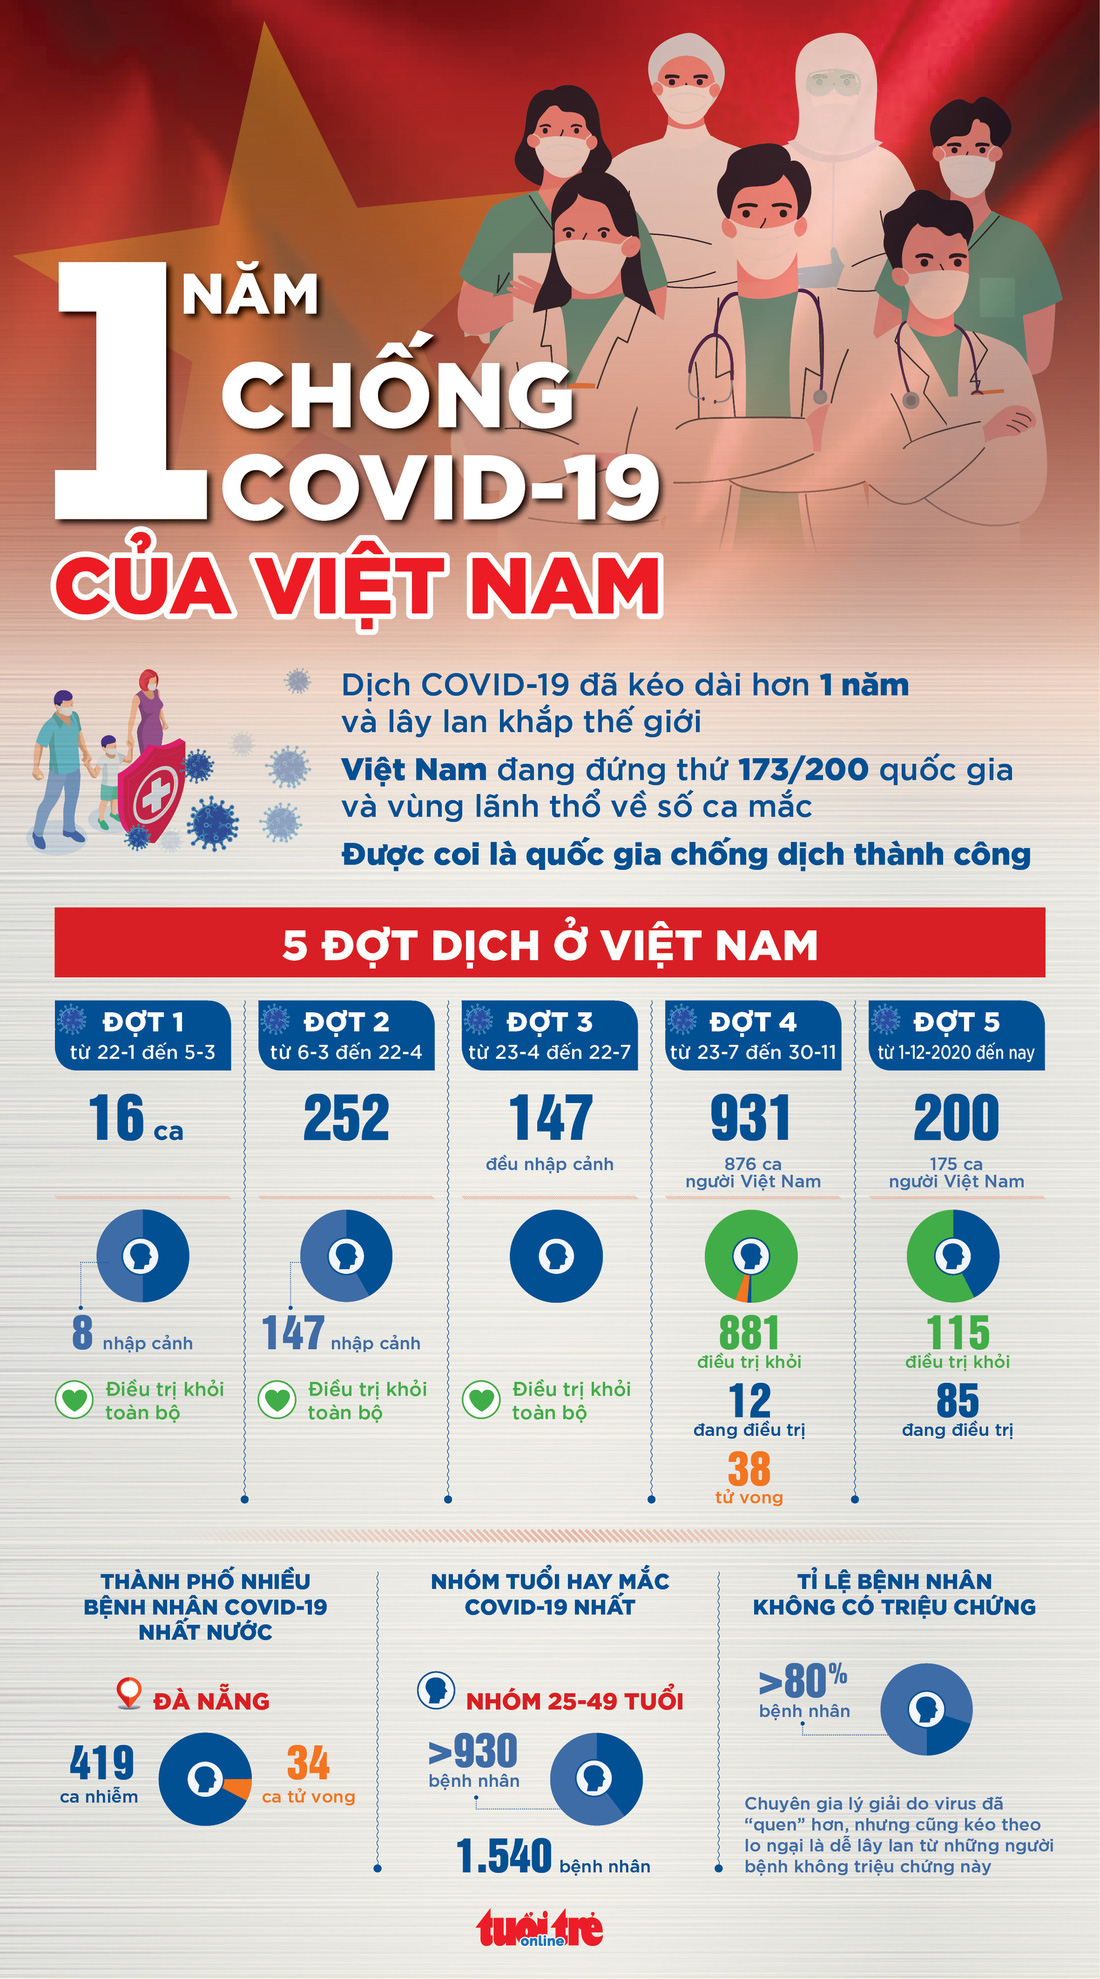 Toàn cảnh 1 năm chống COVID-19 của Việt Nam - Ảnh 1.